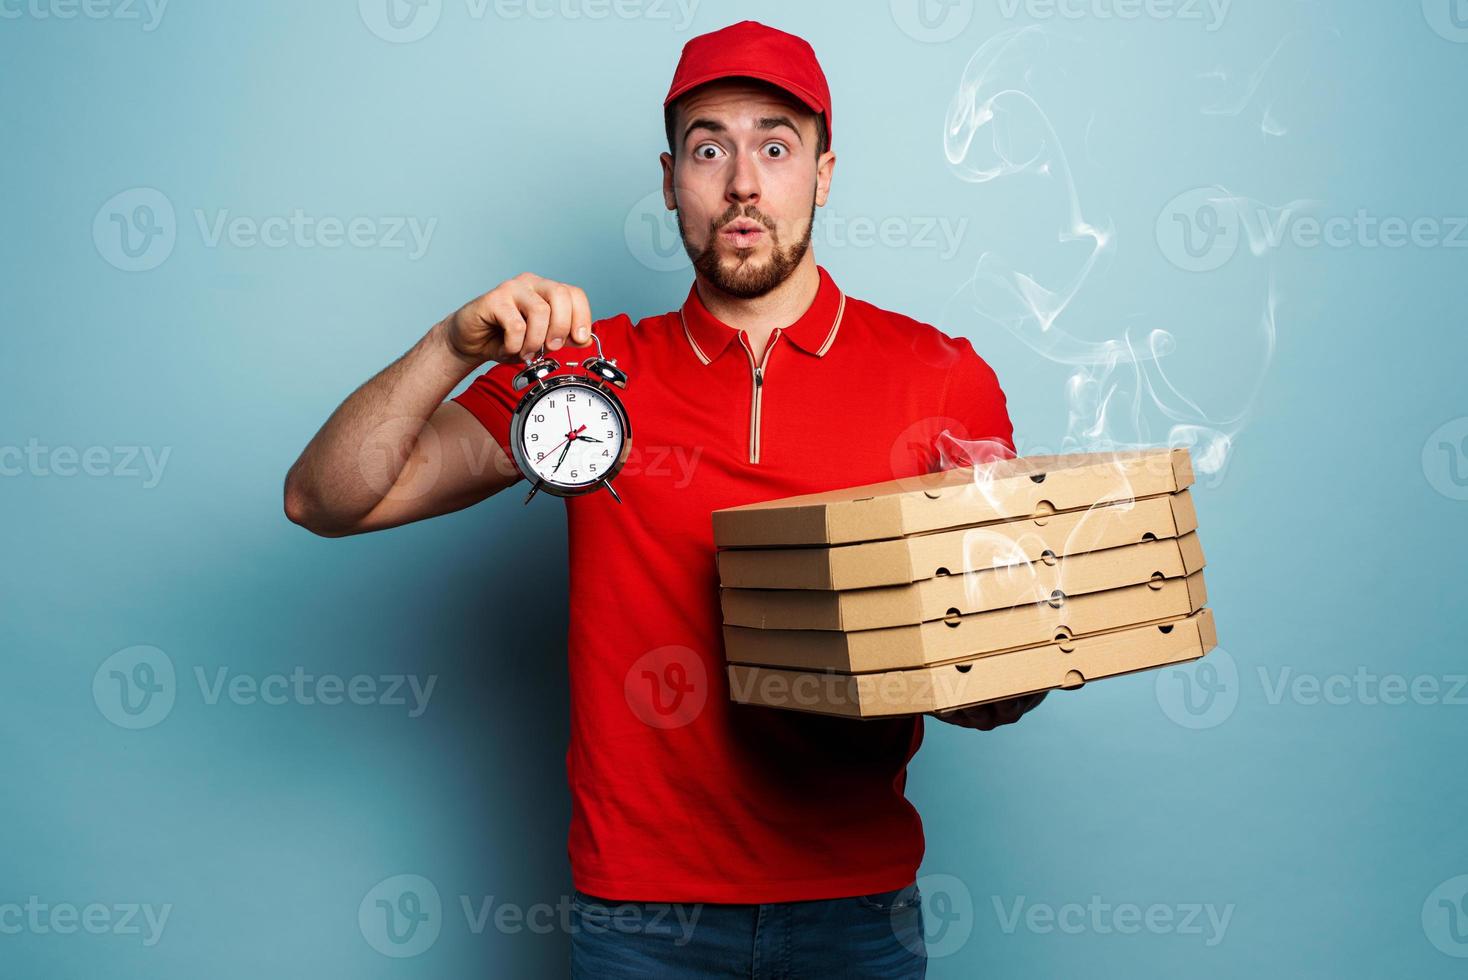 mensajero es puntual a entregar con rapidez pizzas cian antecedentes foto